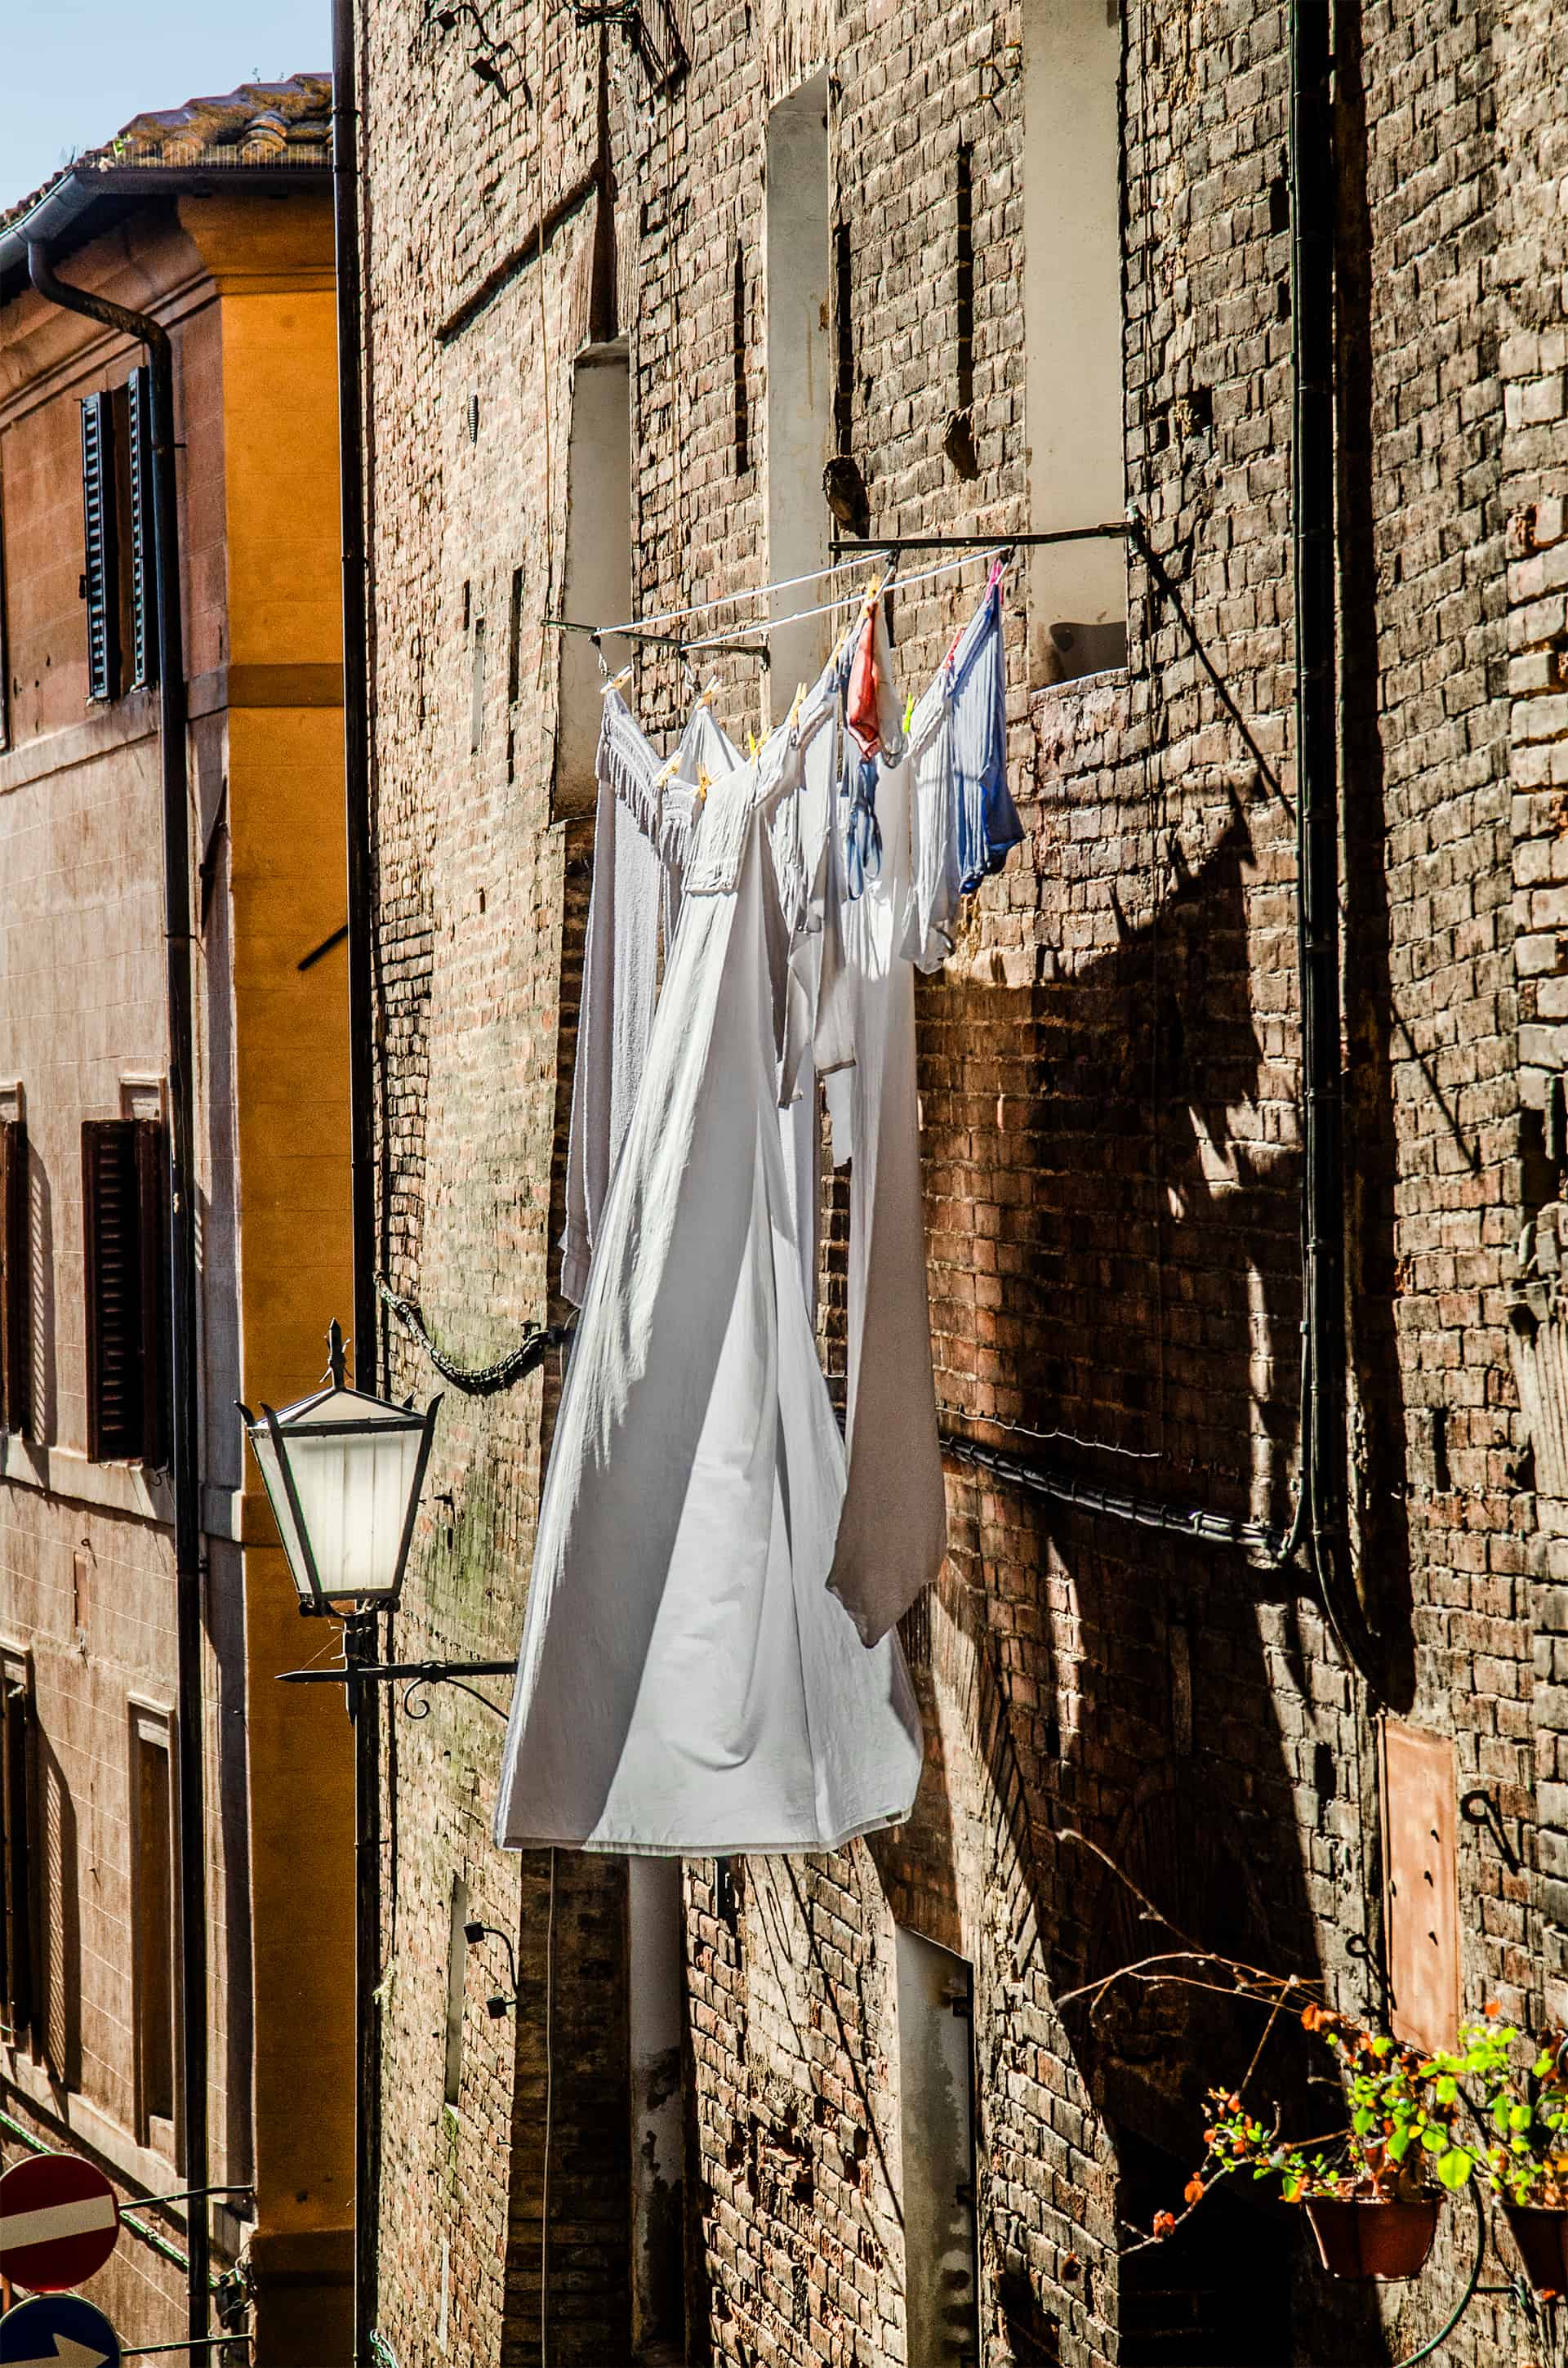 Siena, Tuscany, Italy (2024)